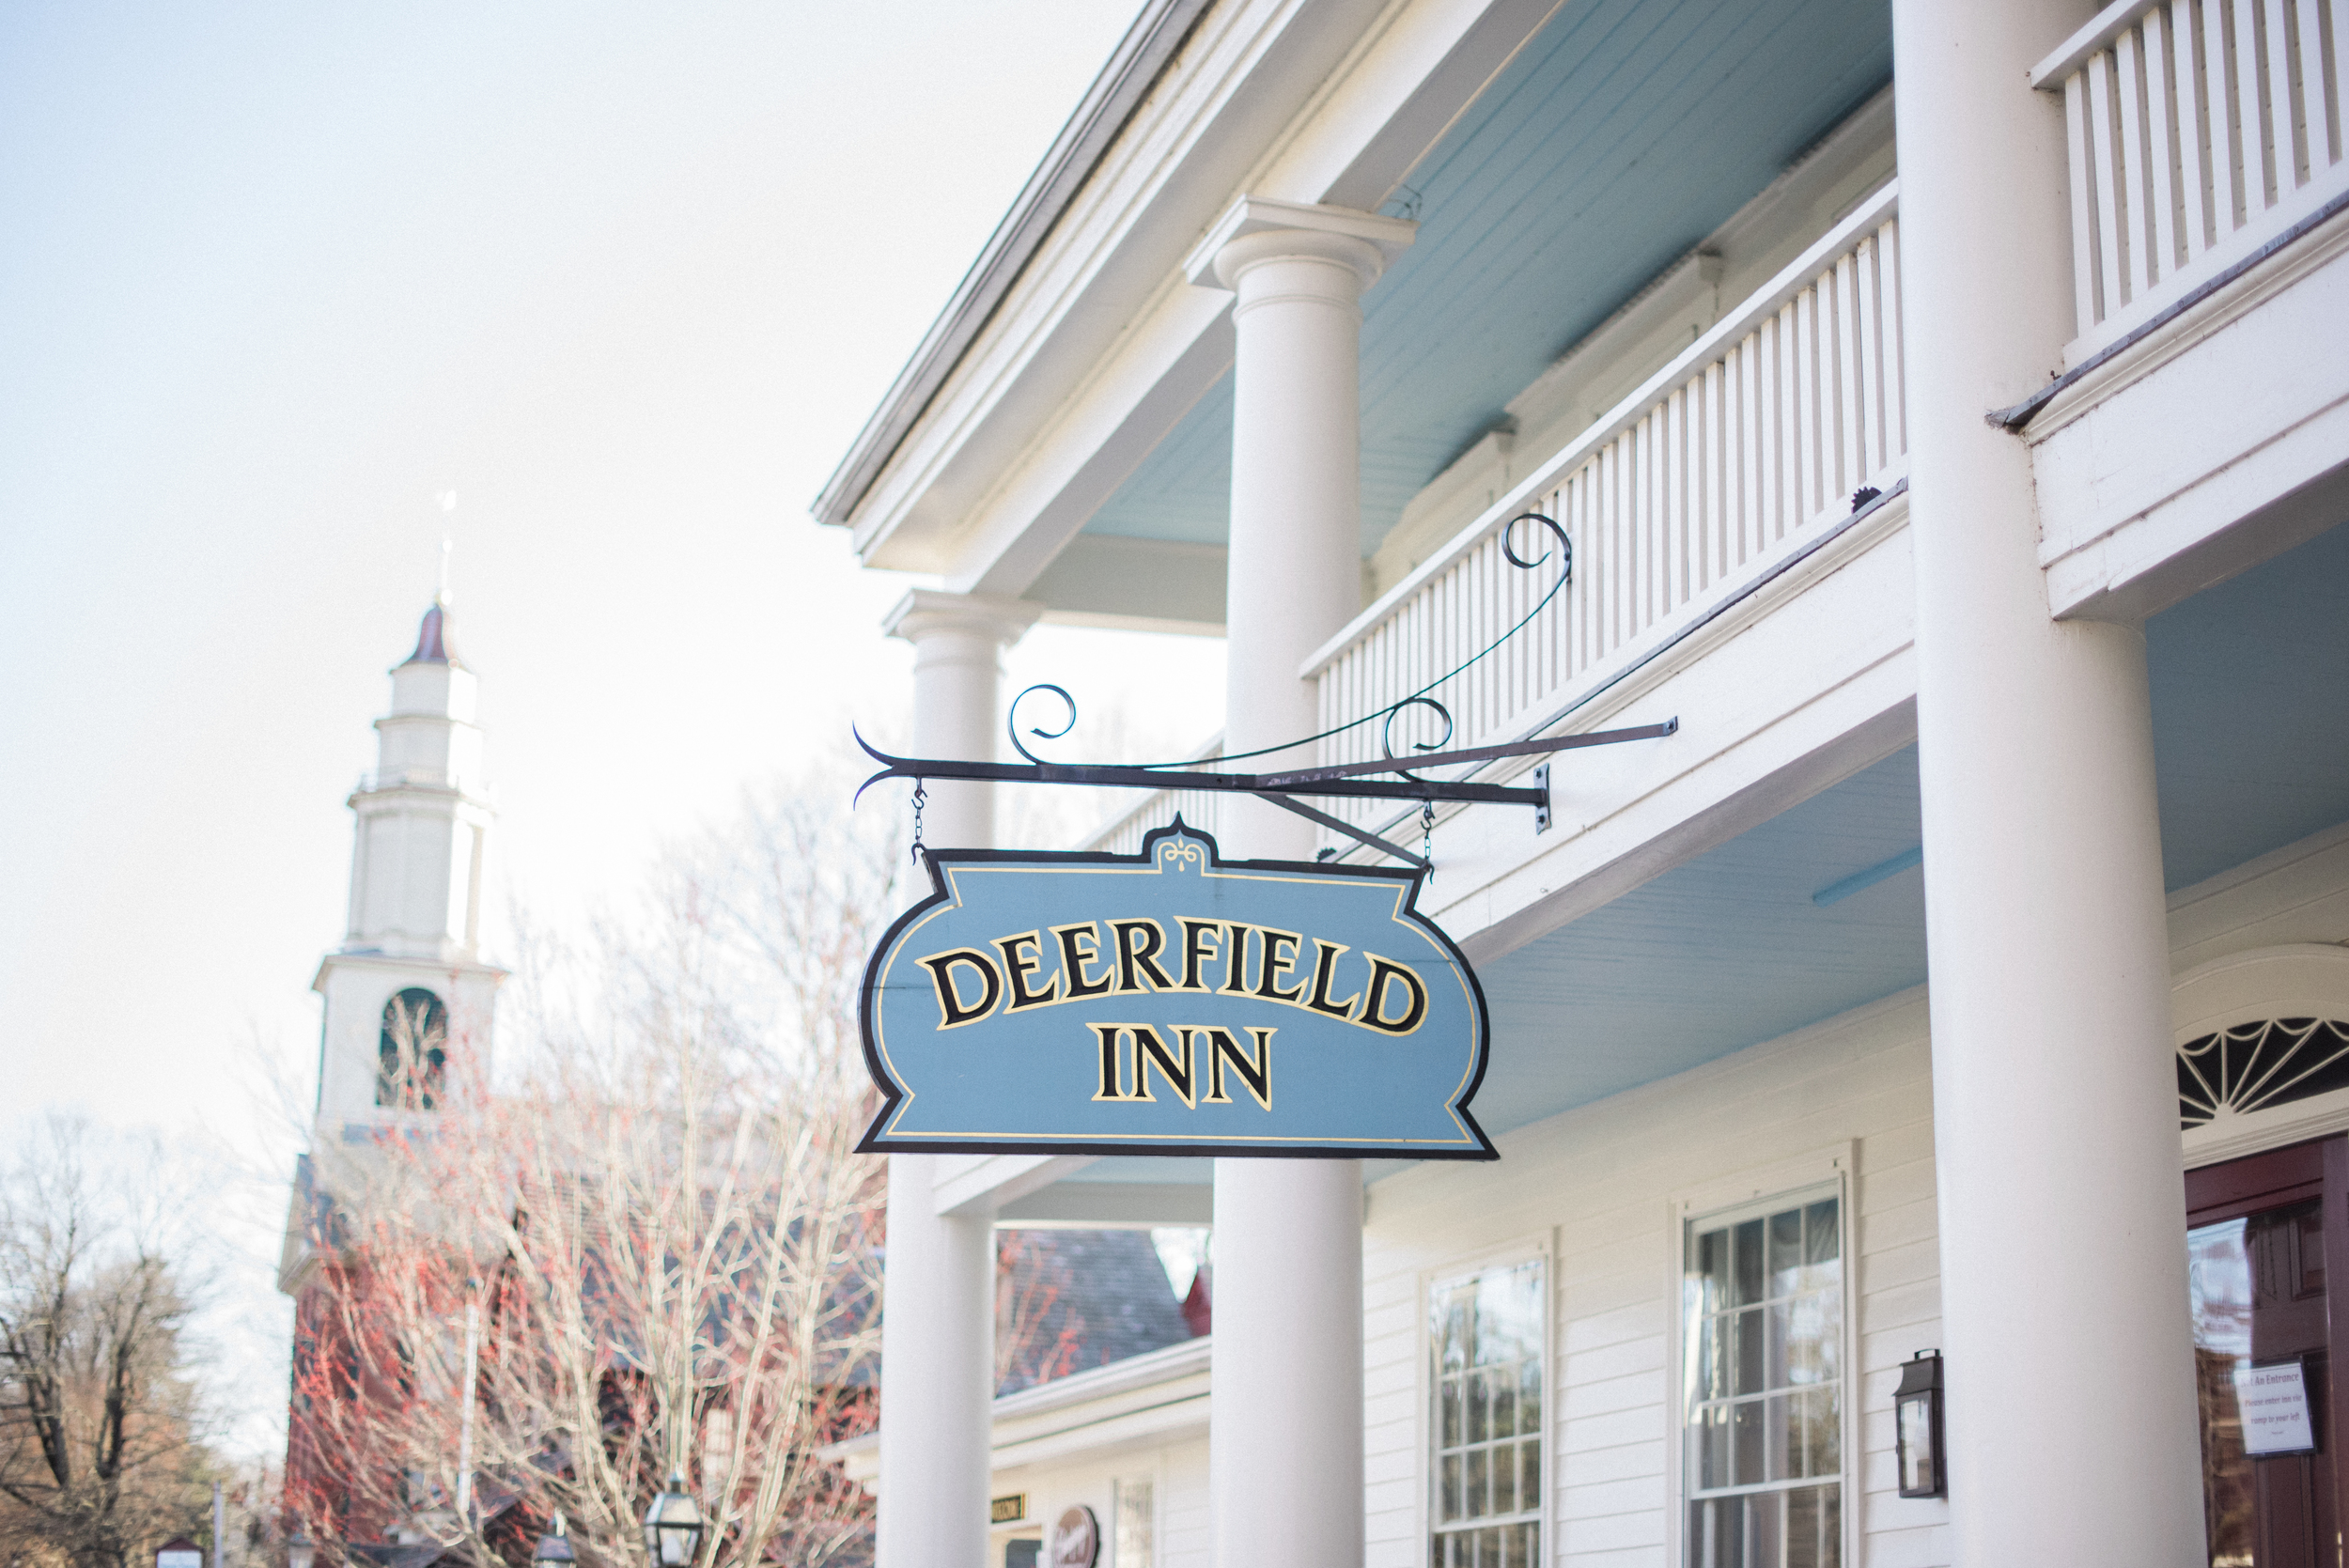 The Deerfield Inn at Historic Deerfield